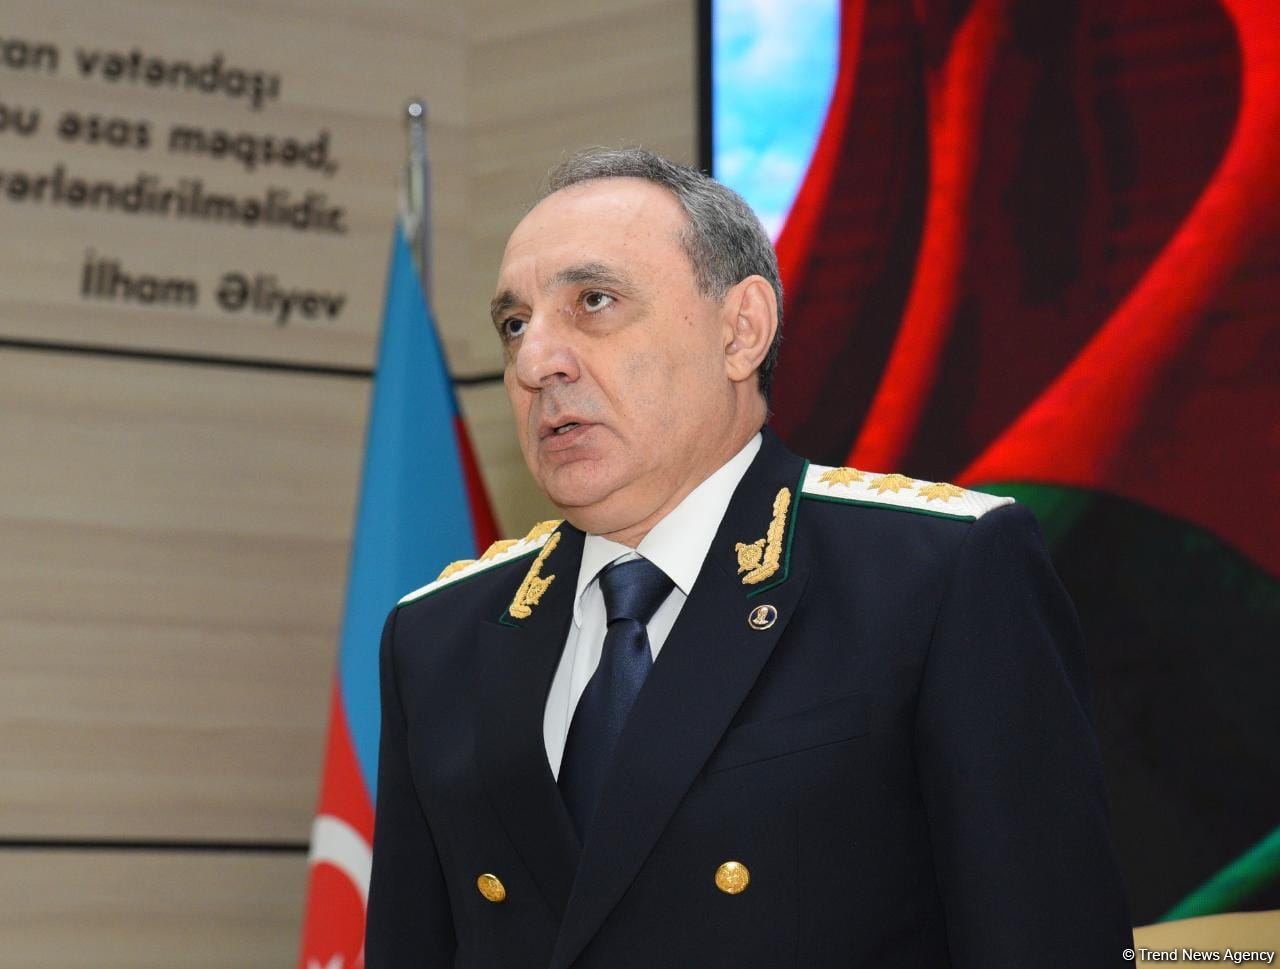 В Генпрокуратуре Азербайджана прошло расширенное заседание коллегии (ФОТО)